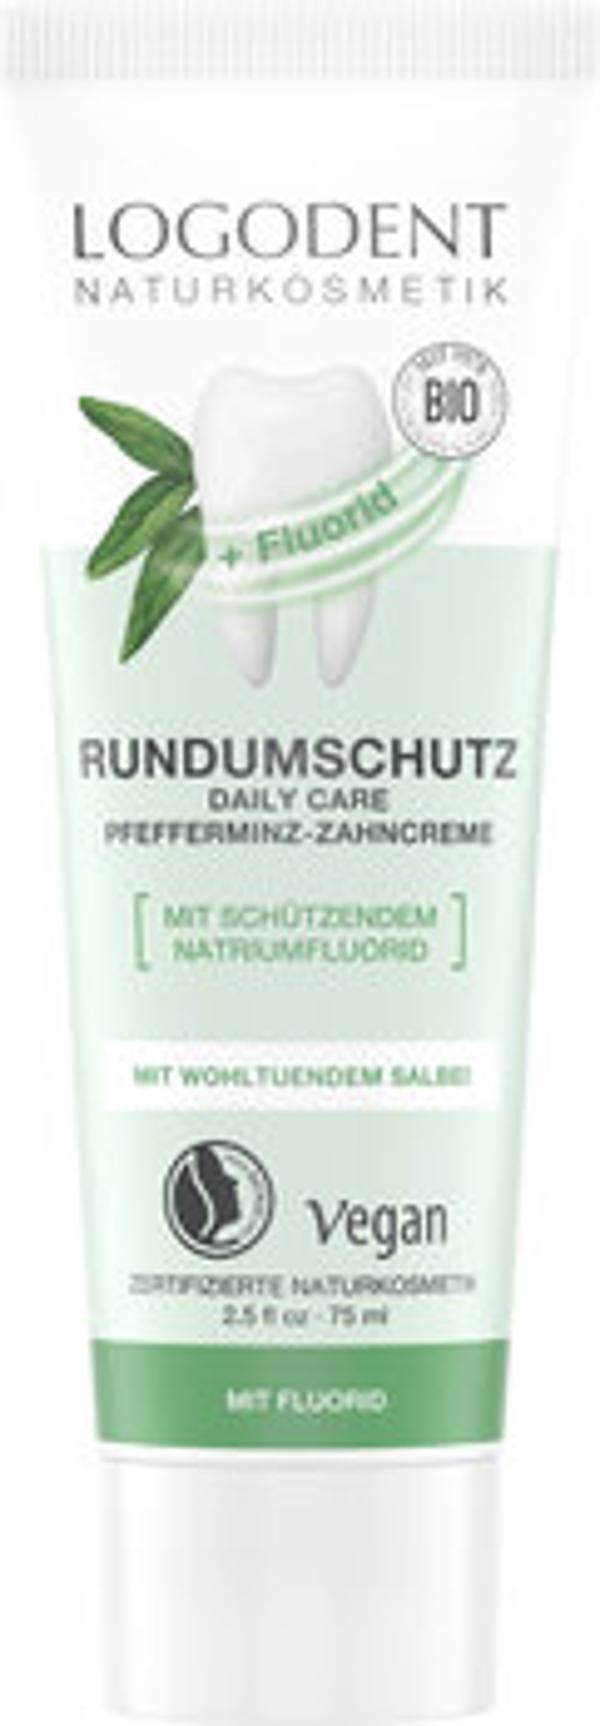 Produktfoto zu Rundumschutz Pfefferminz-Zahncreme, 75 ml